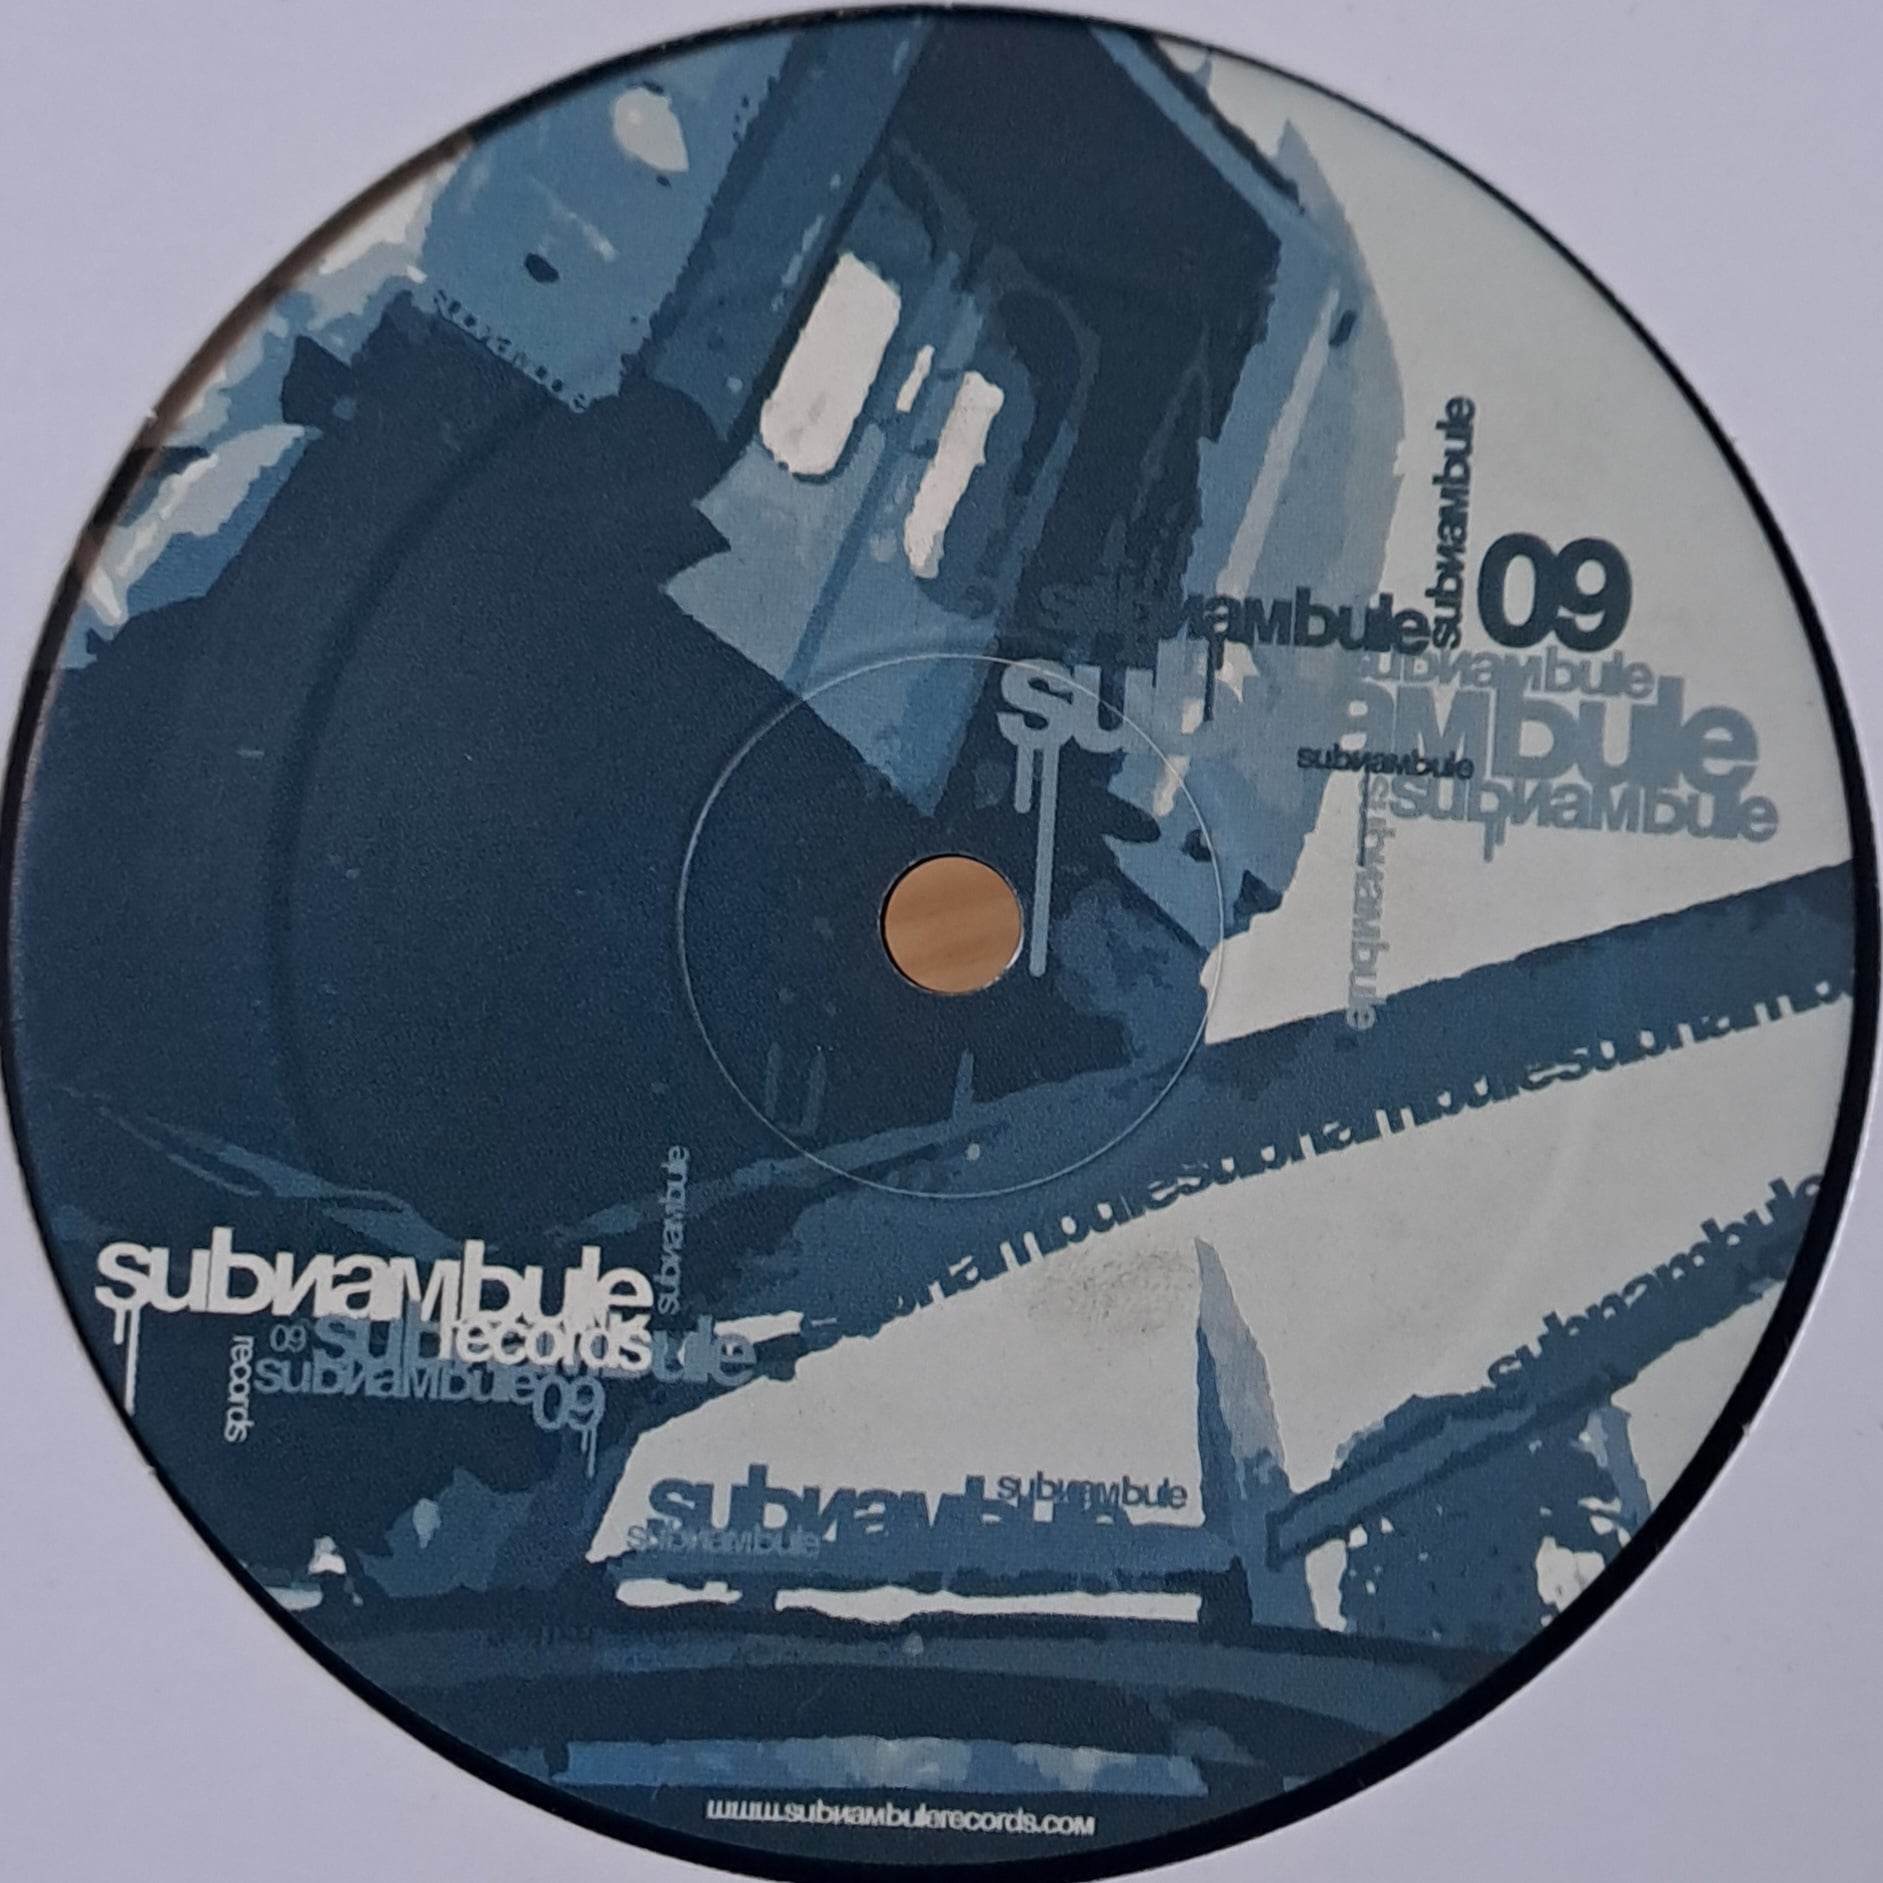 Subnambule 009 - vinyle freetekno